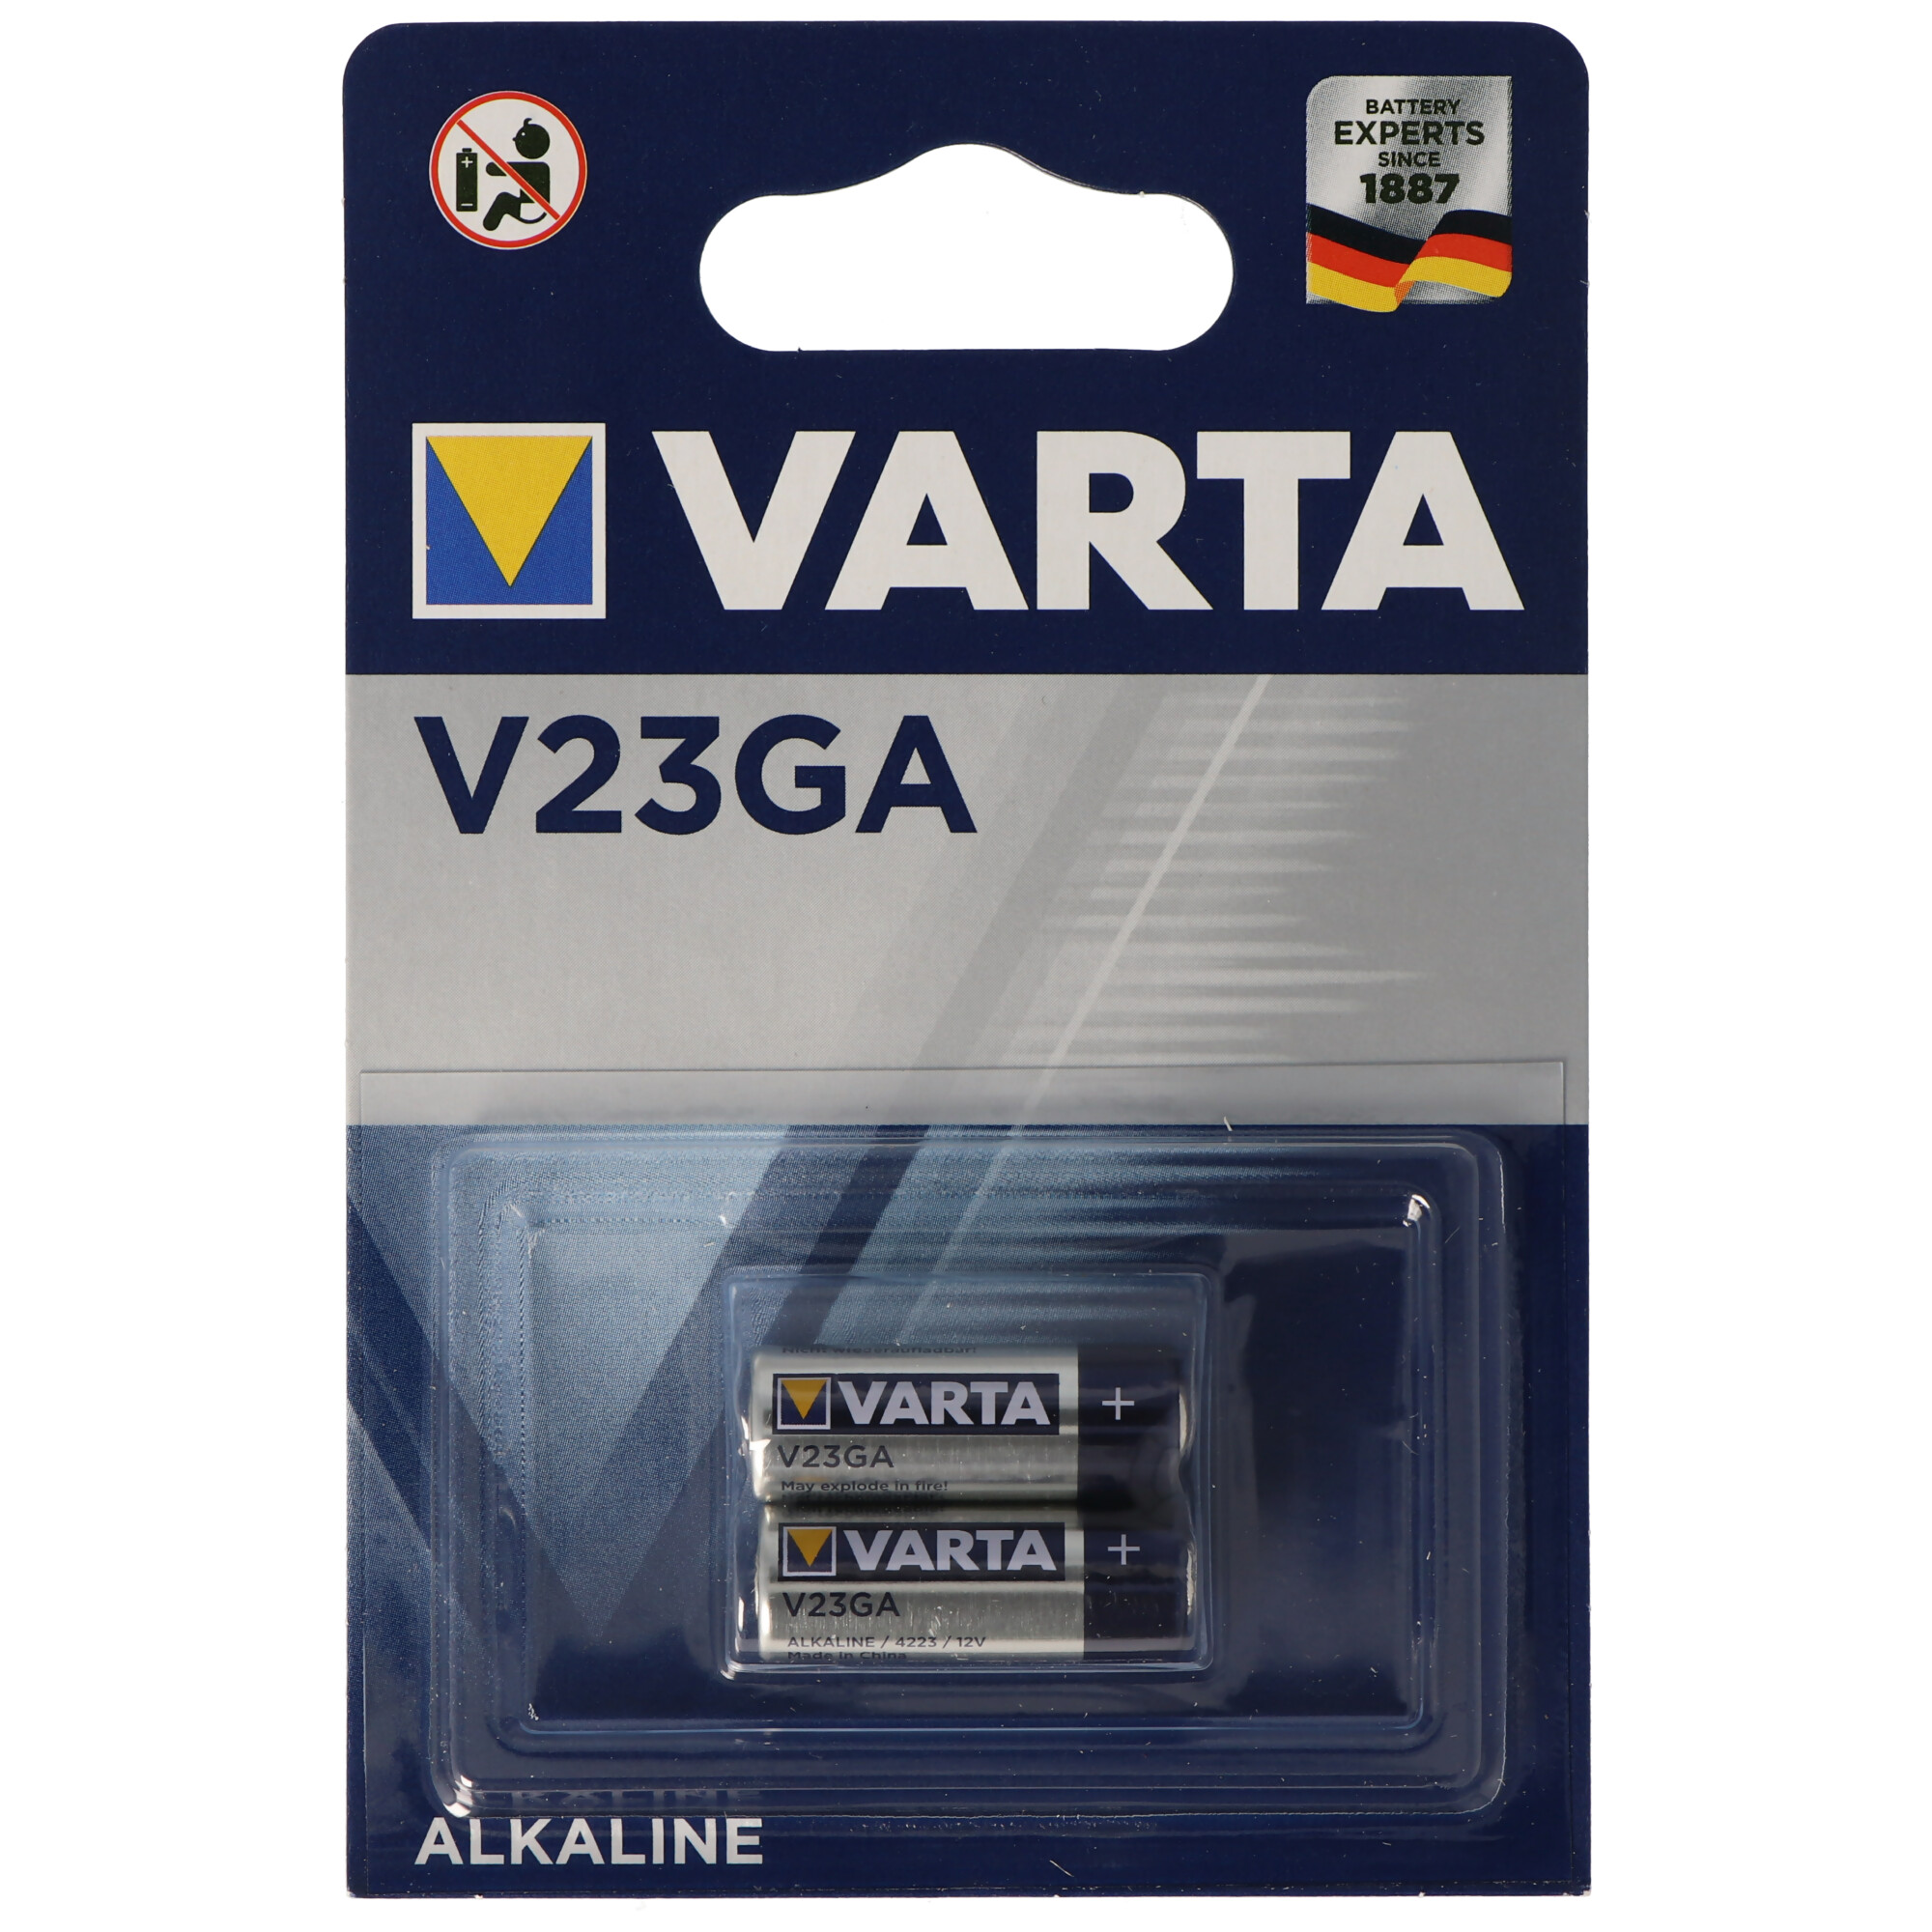 1 x 2er Blister Varta V23GA 4223 12V Batterie Knopfzelle MN21 L1028 LRV08 